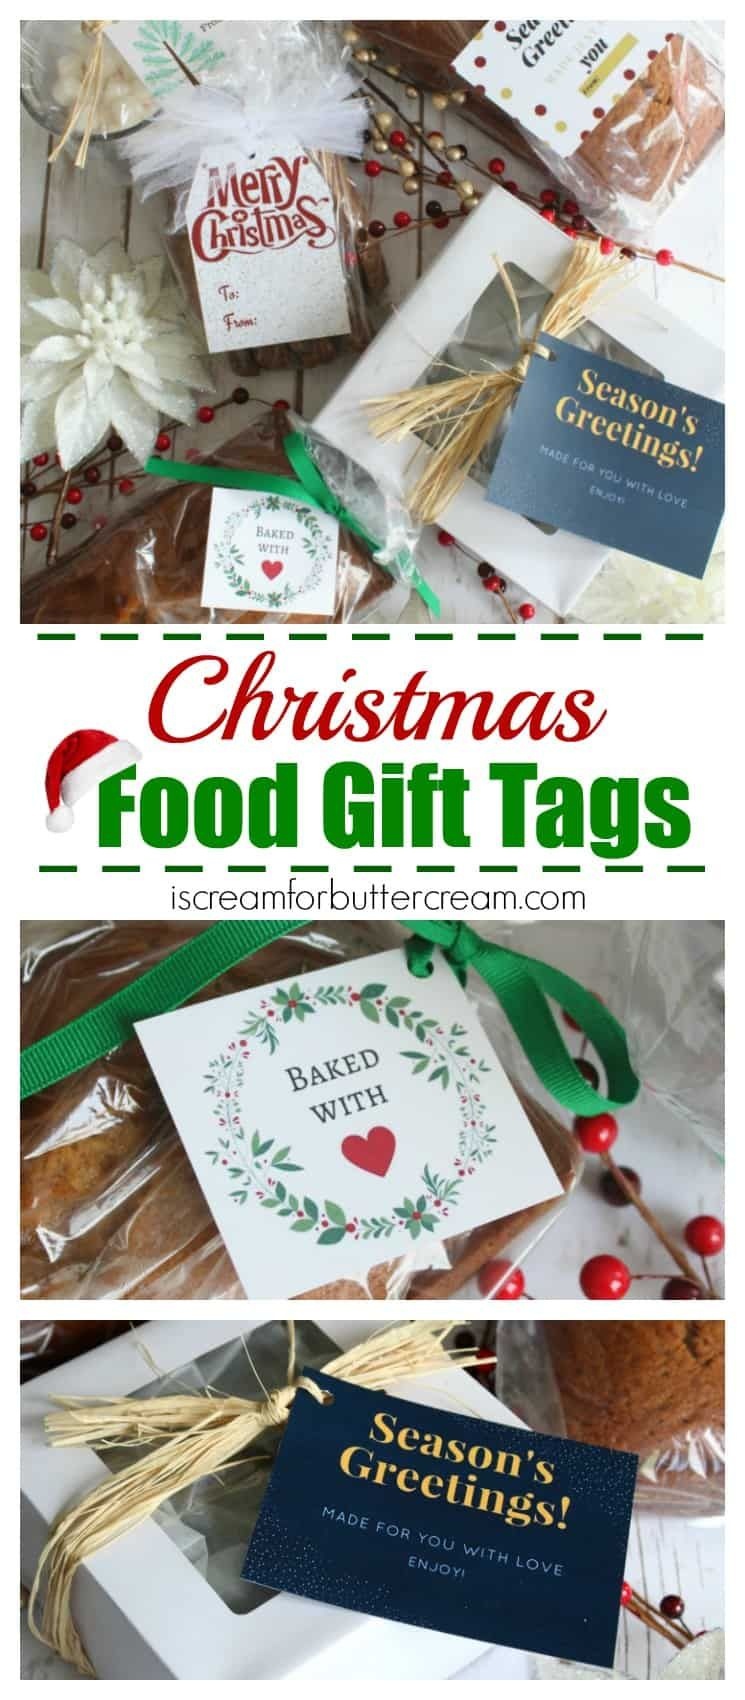 Free Printable Christmas Food Gift Tags | Christmas - Misc - Free Printable Christmas Food Labels